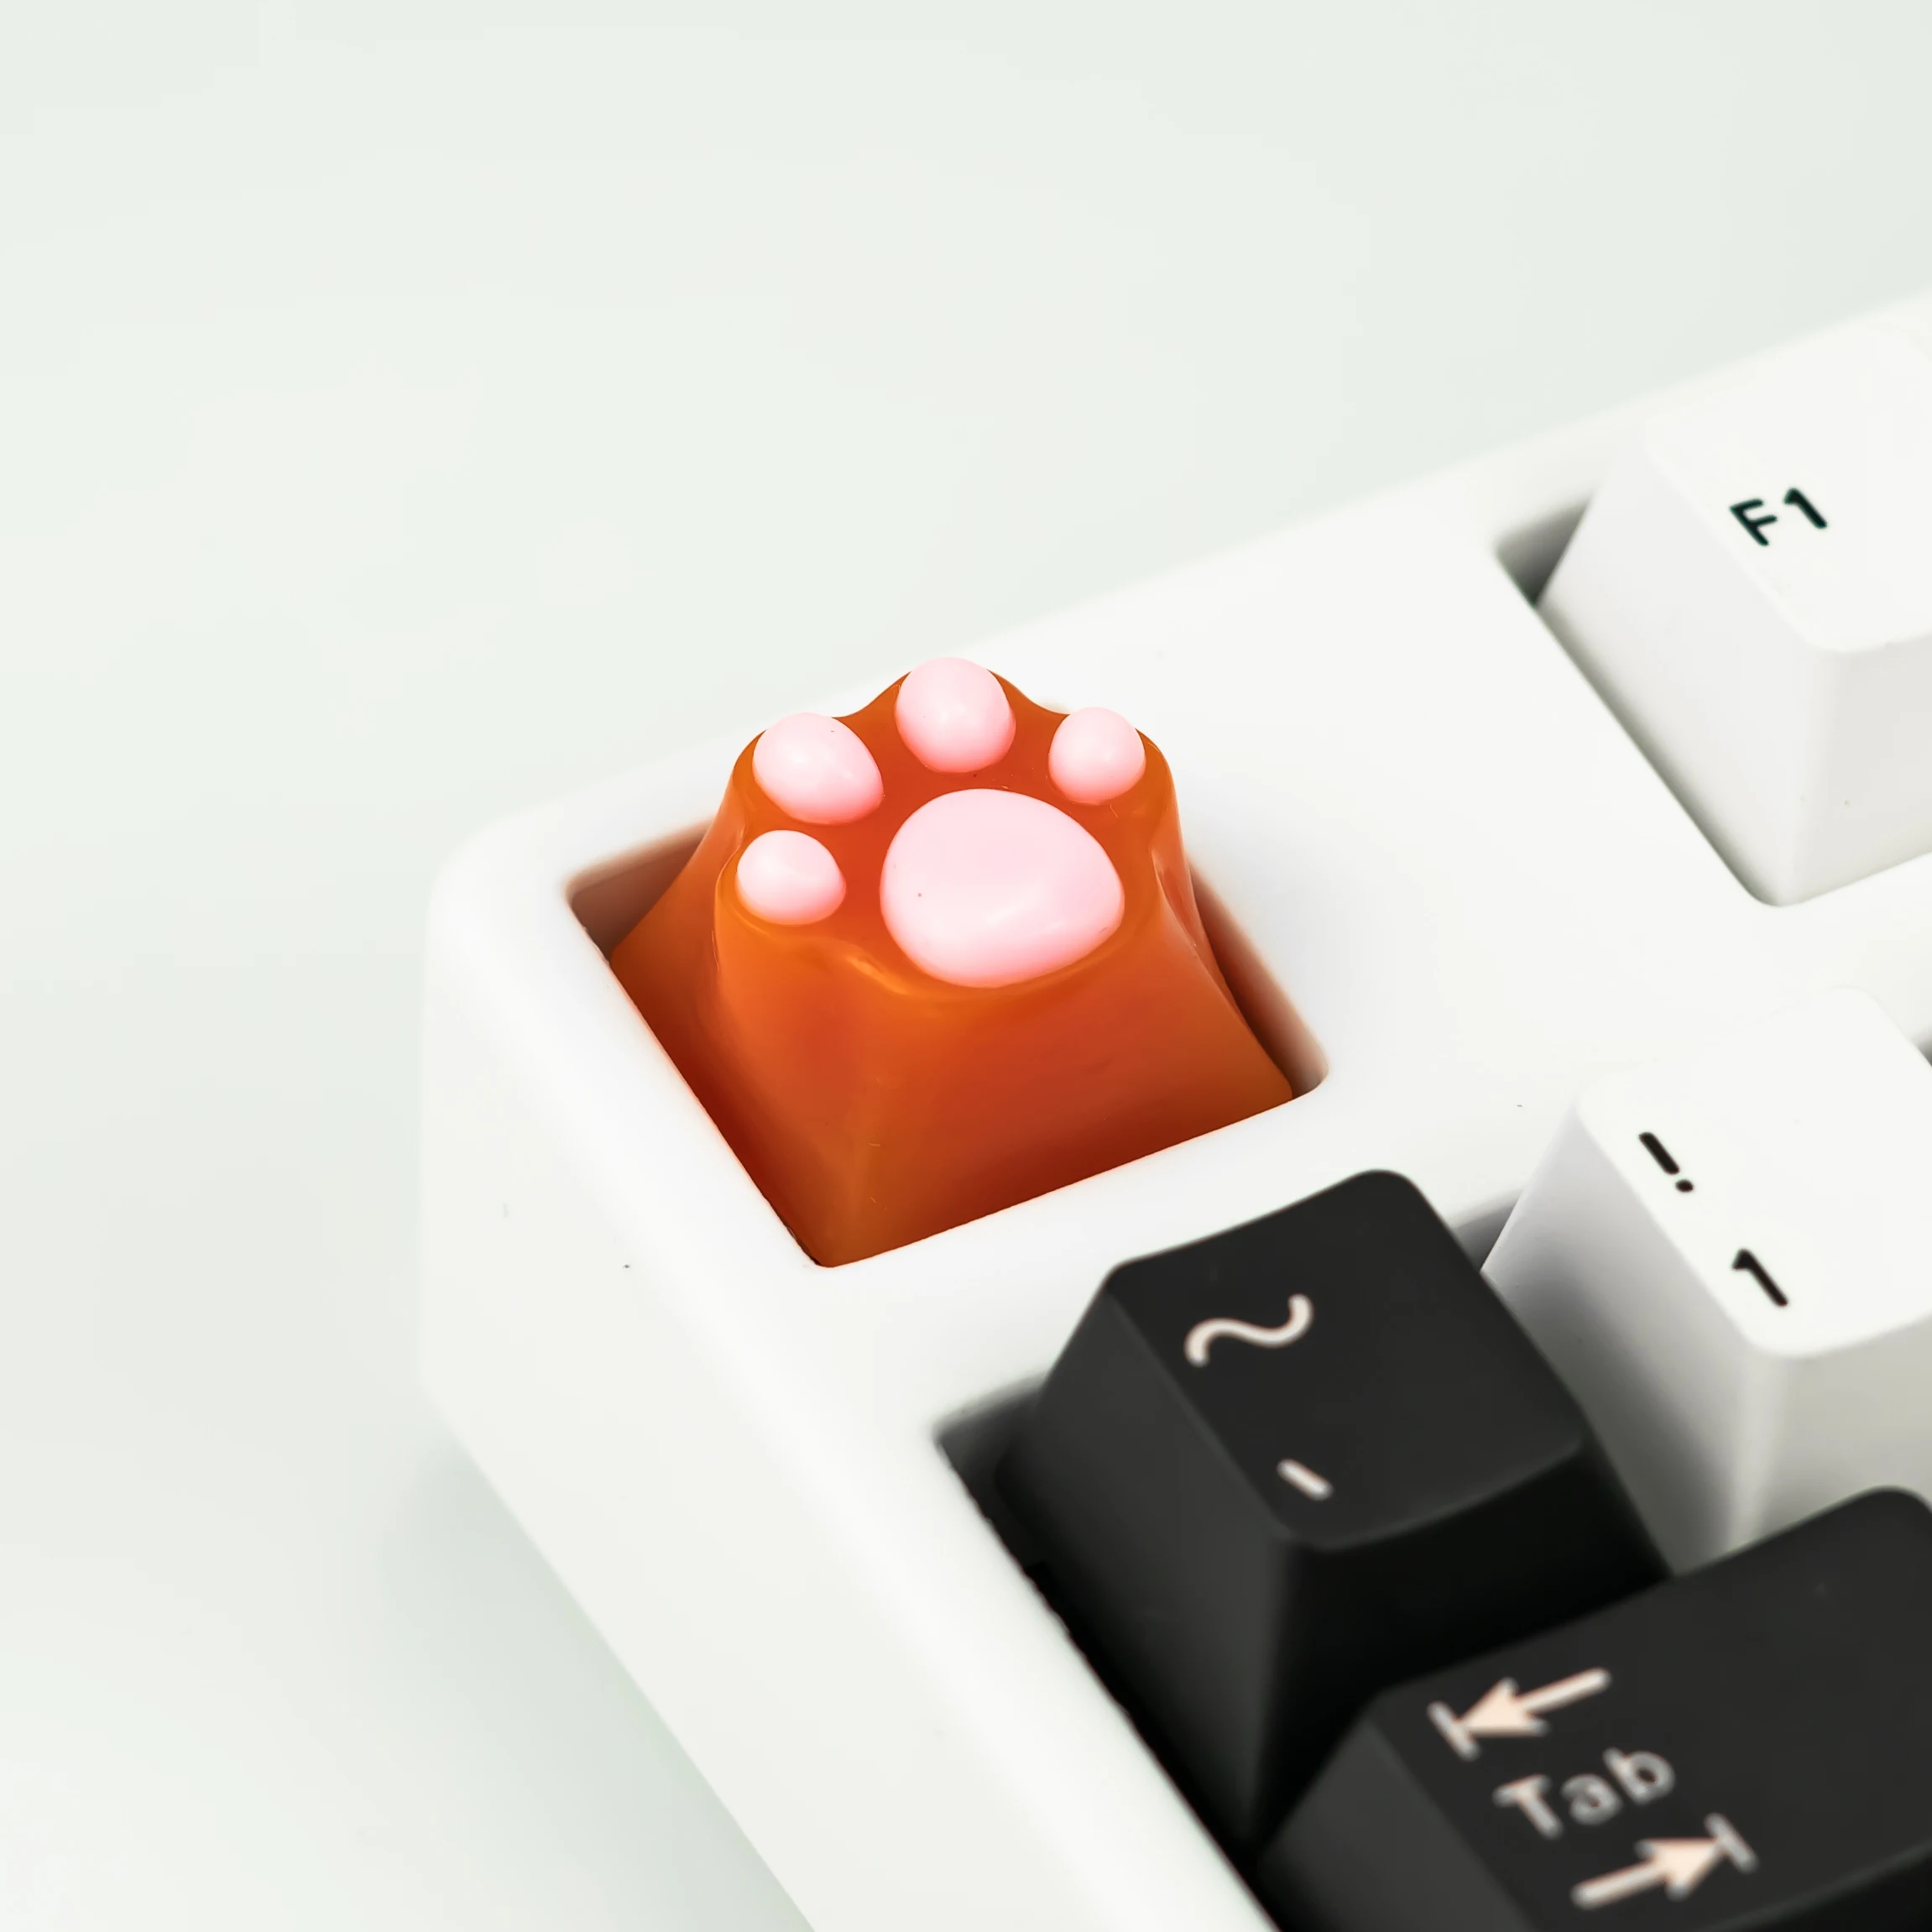 Фото - Механическая клавиатура в виде кошки/панды и ладони, мягкая сенсорная клавиатура, силиконовая прозрачная подарочная клавиатура клавиатура